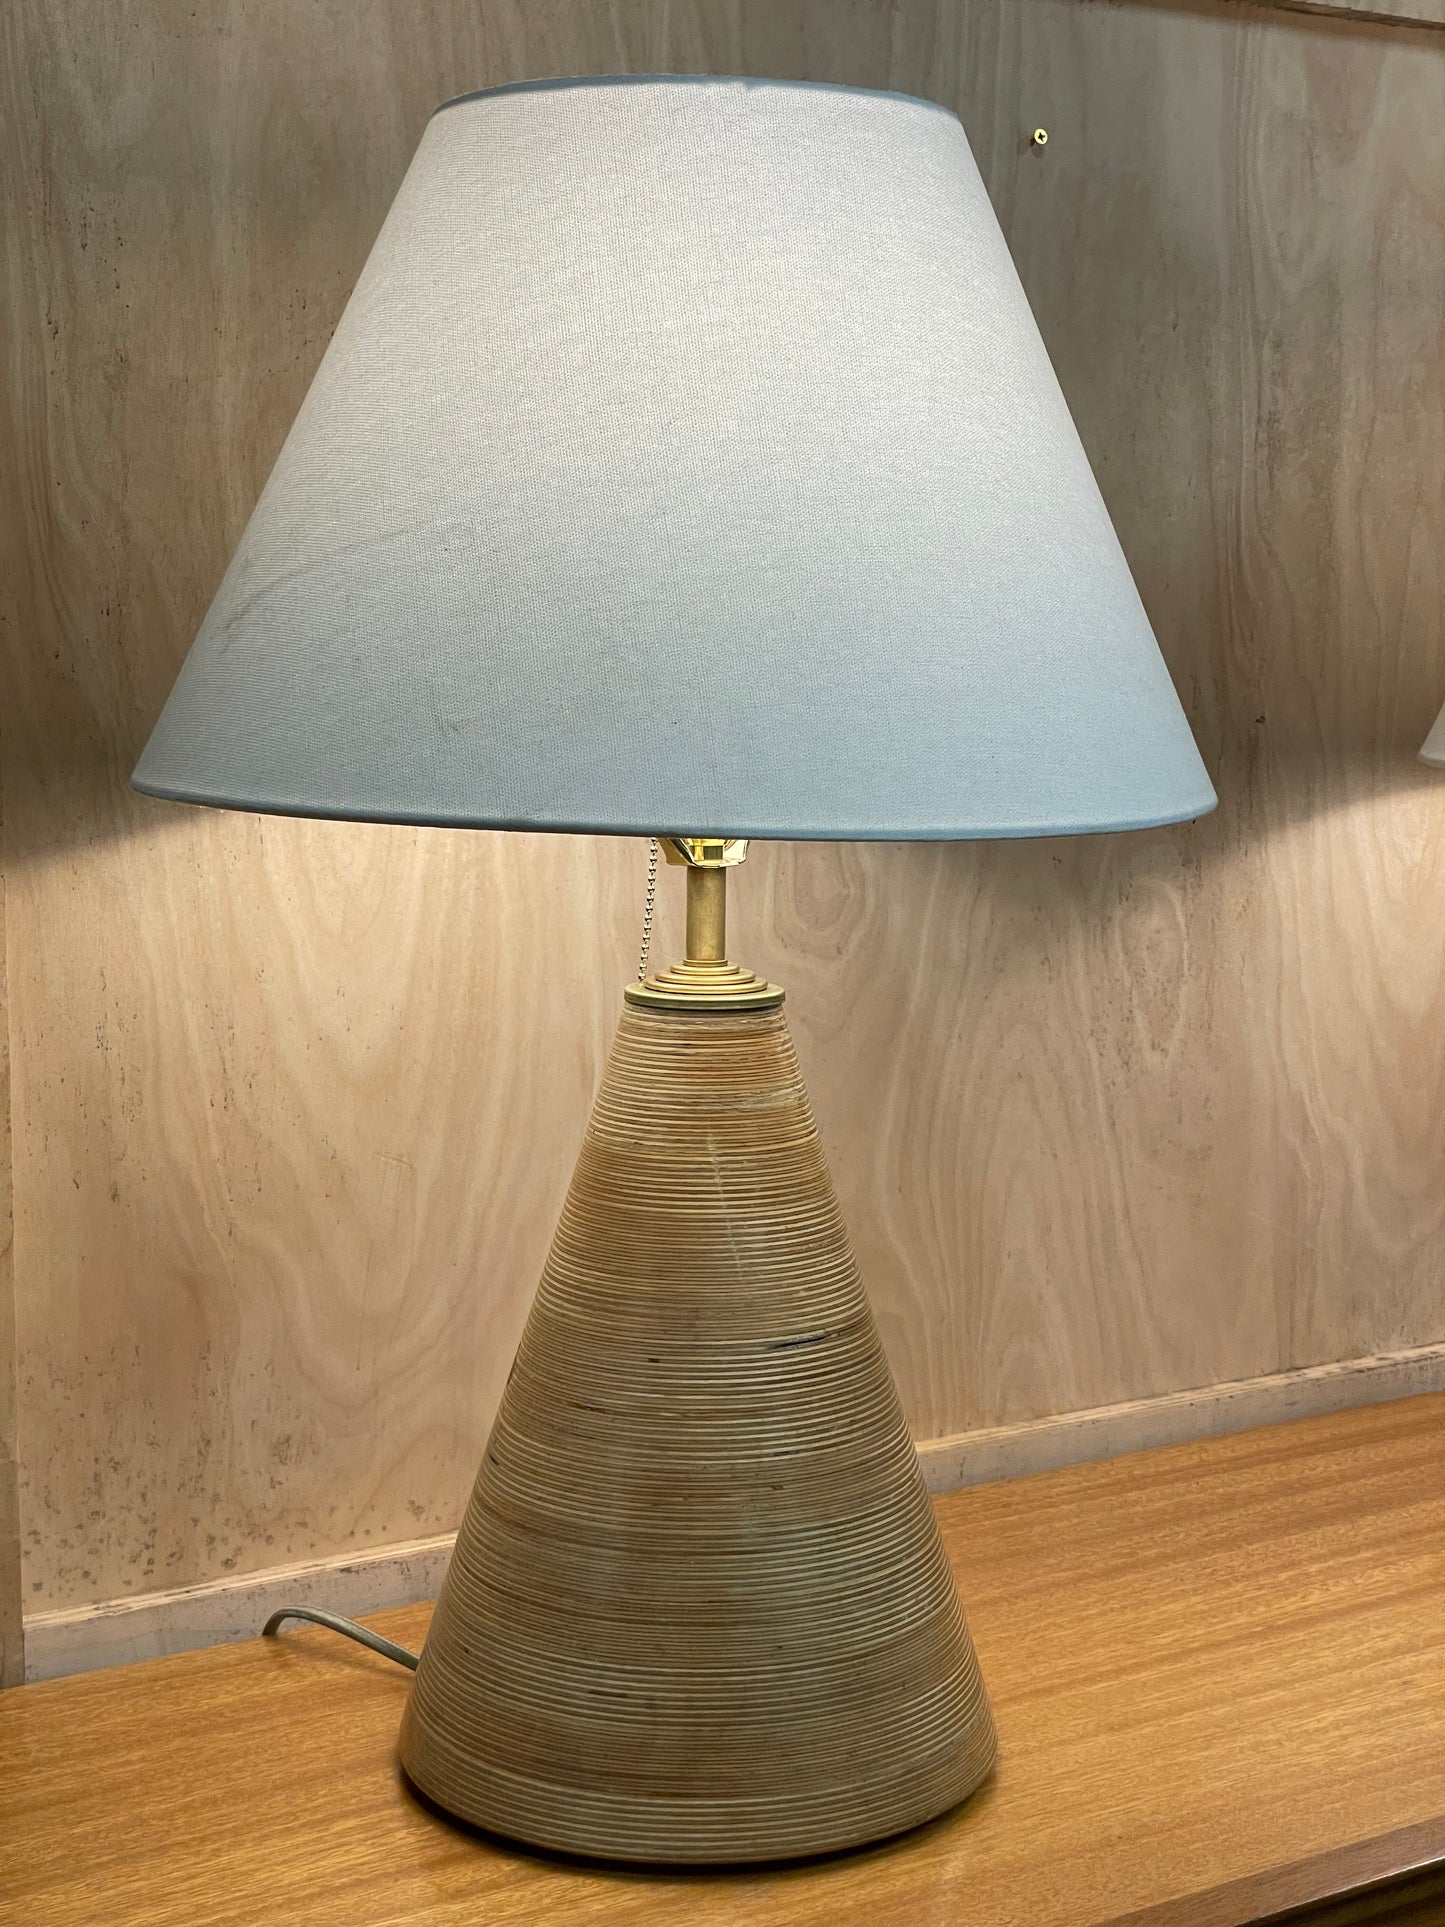 Pair of custom made lamps